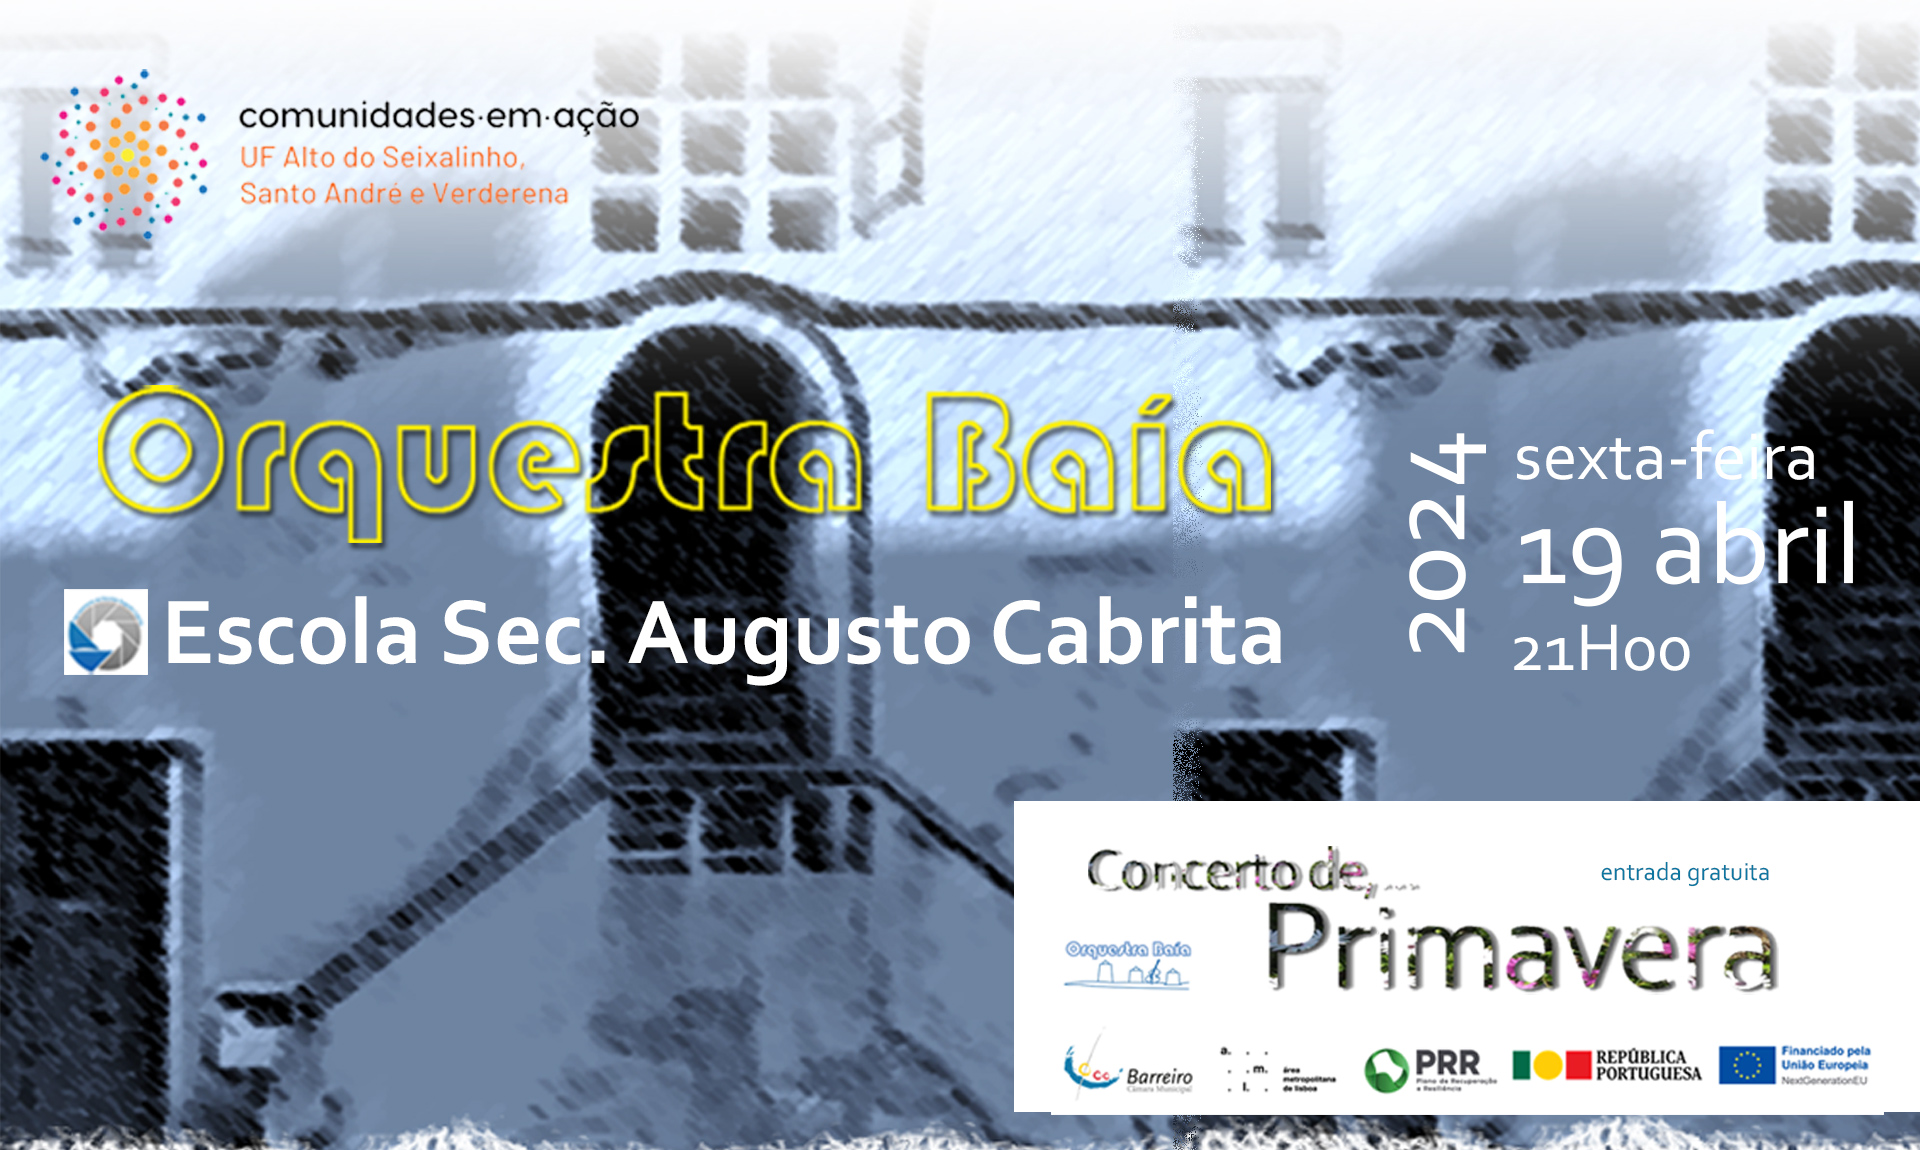 Orquestra Baía | Concerto de Primavera | 19 abril | 21h00 | Escola Sec. Augusto Cabrita (Cartaz)